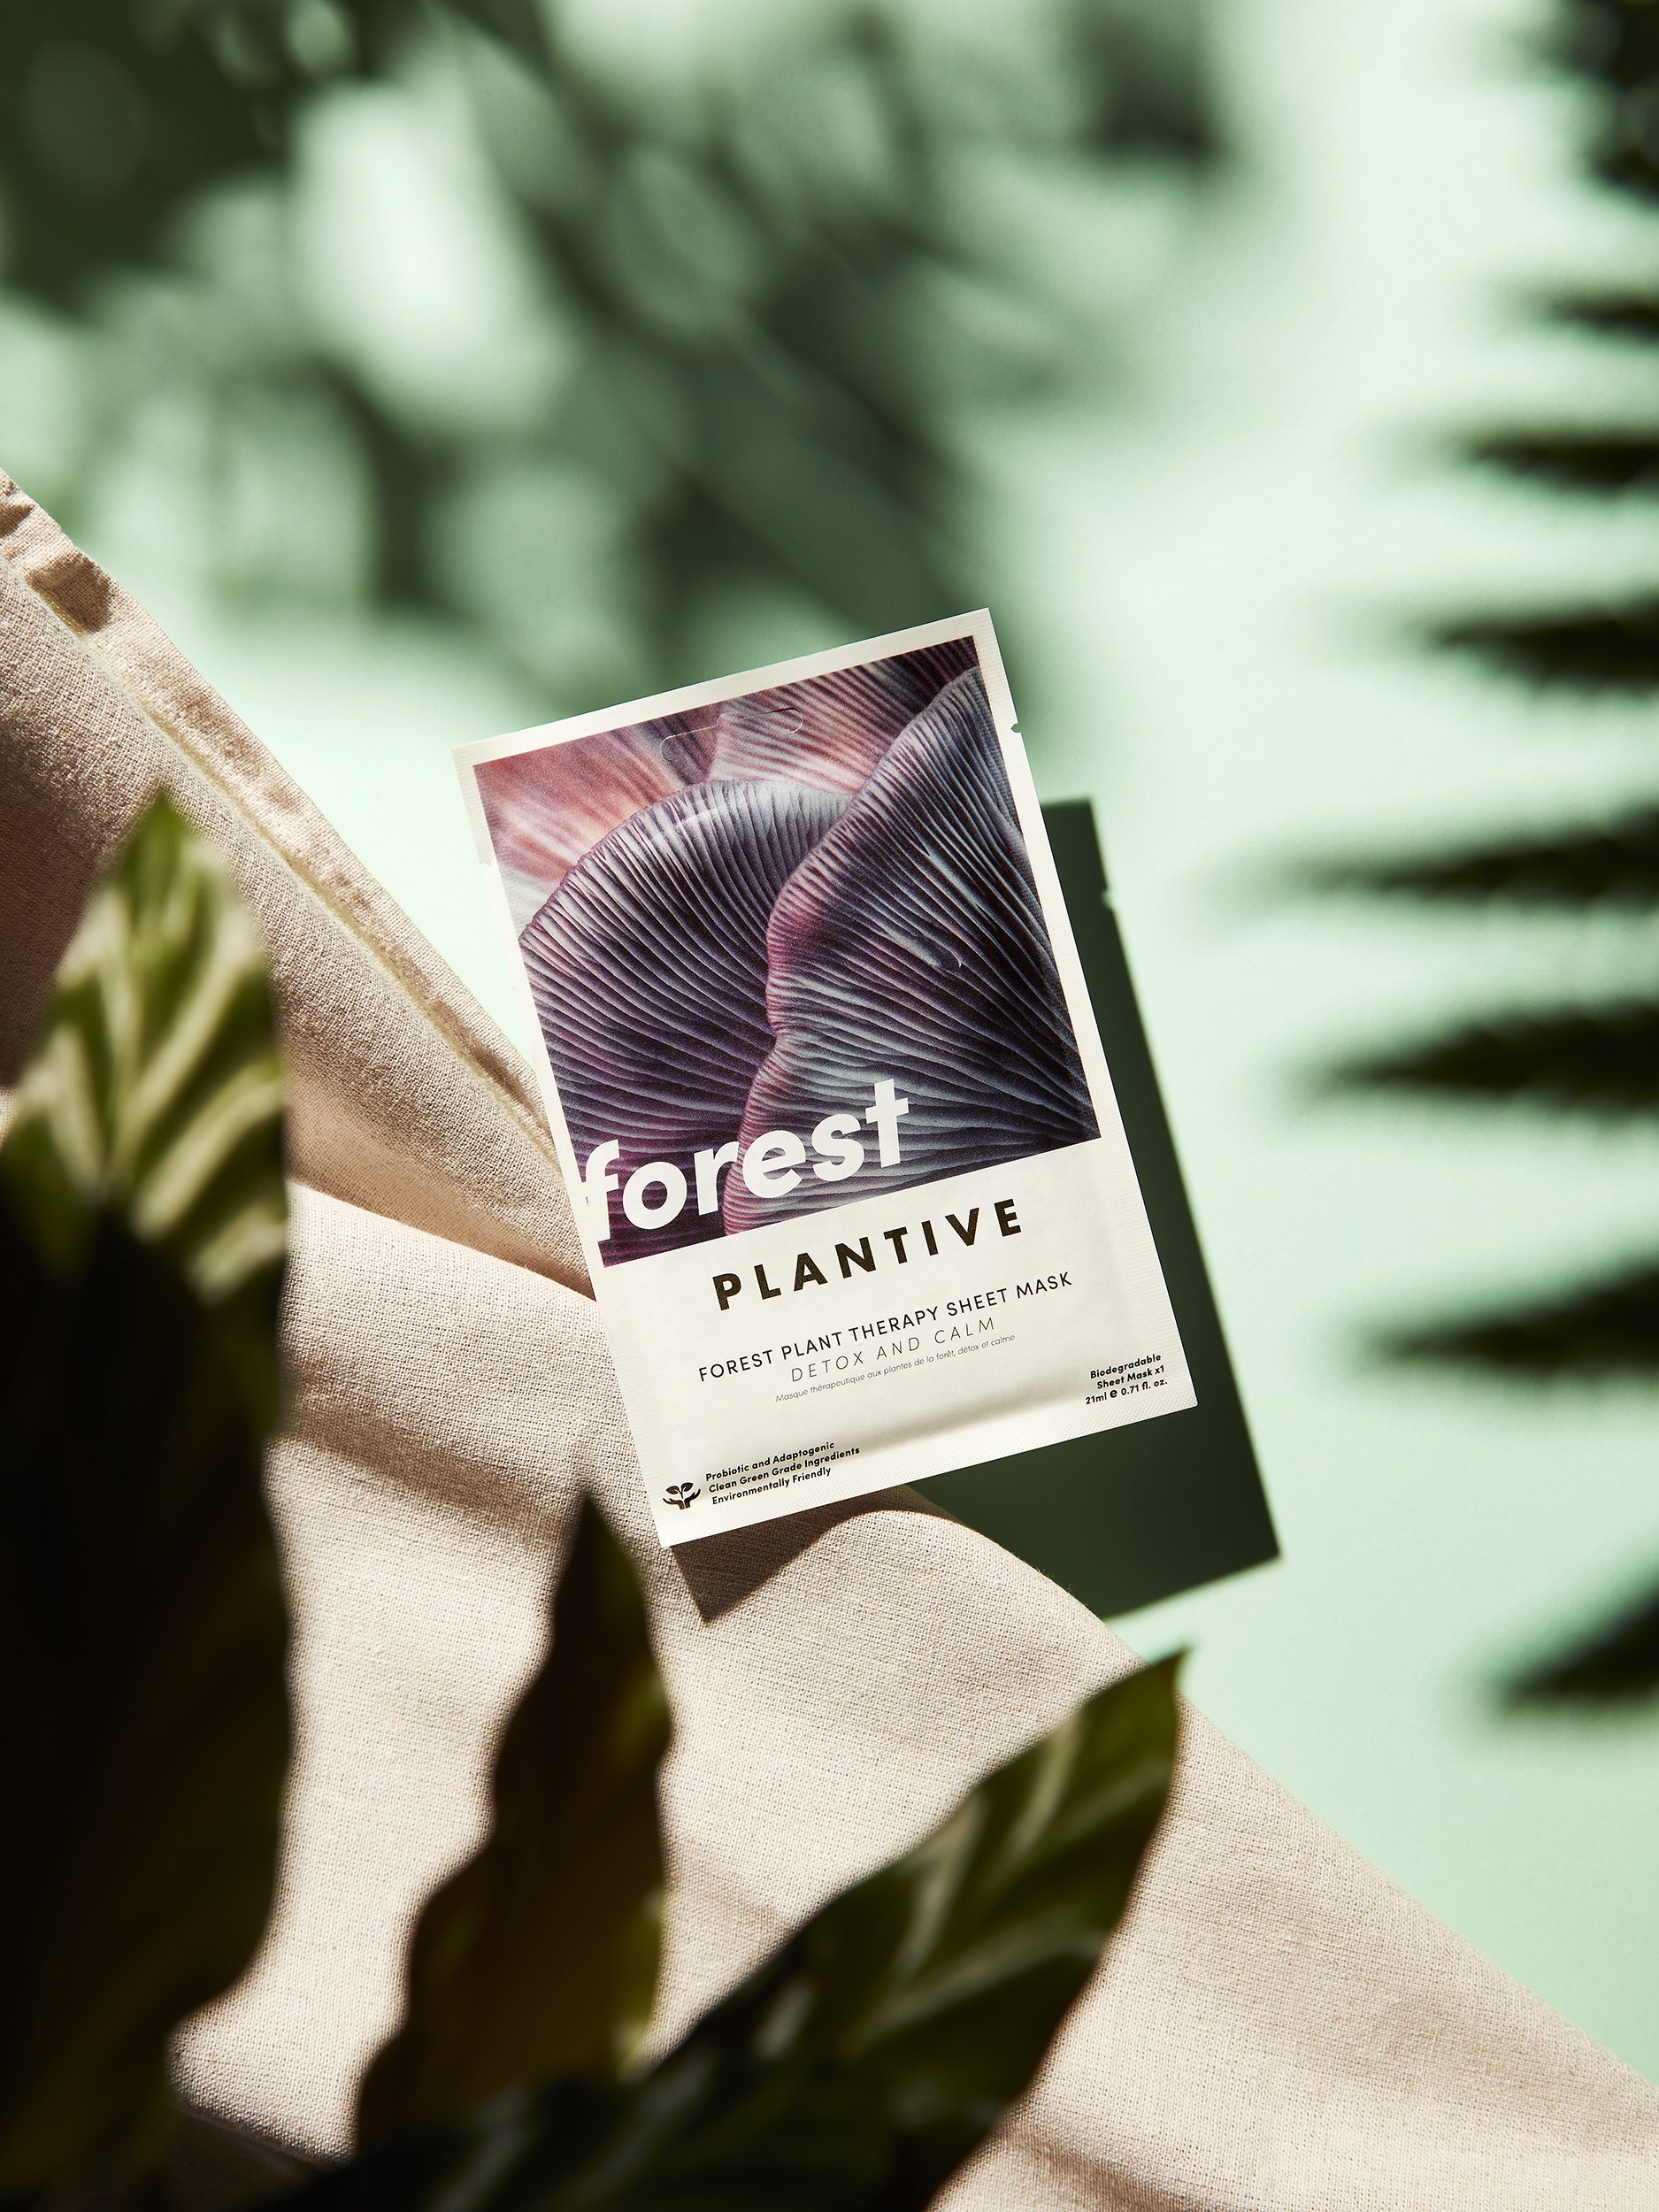 Plantive Forest Face Mask - product photographer Simon Lyle Ritchie